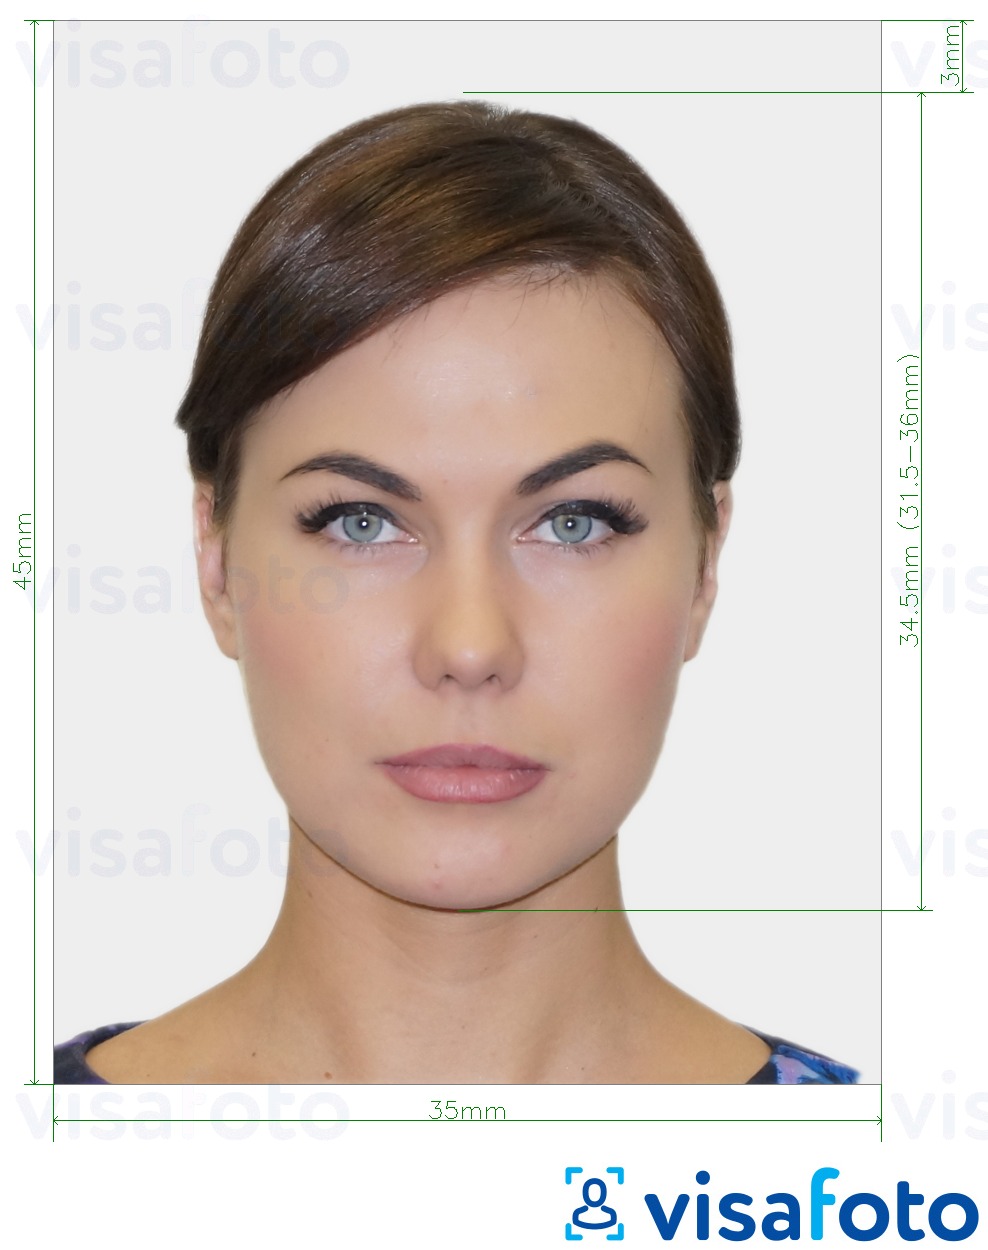 Ejemplo de foto para Tarjeta de identificación austriaca 35x45 mm (3,5x4,5 cm) con la especificación del tamaño exacto